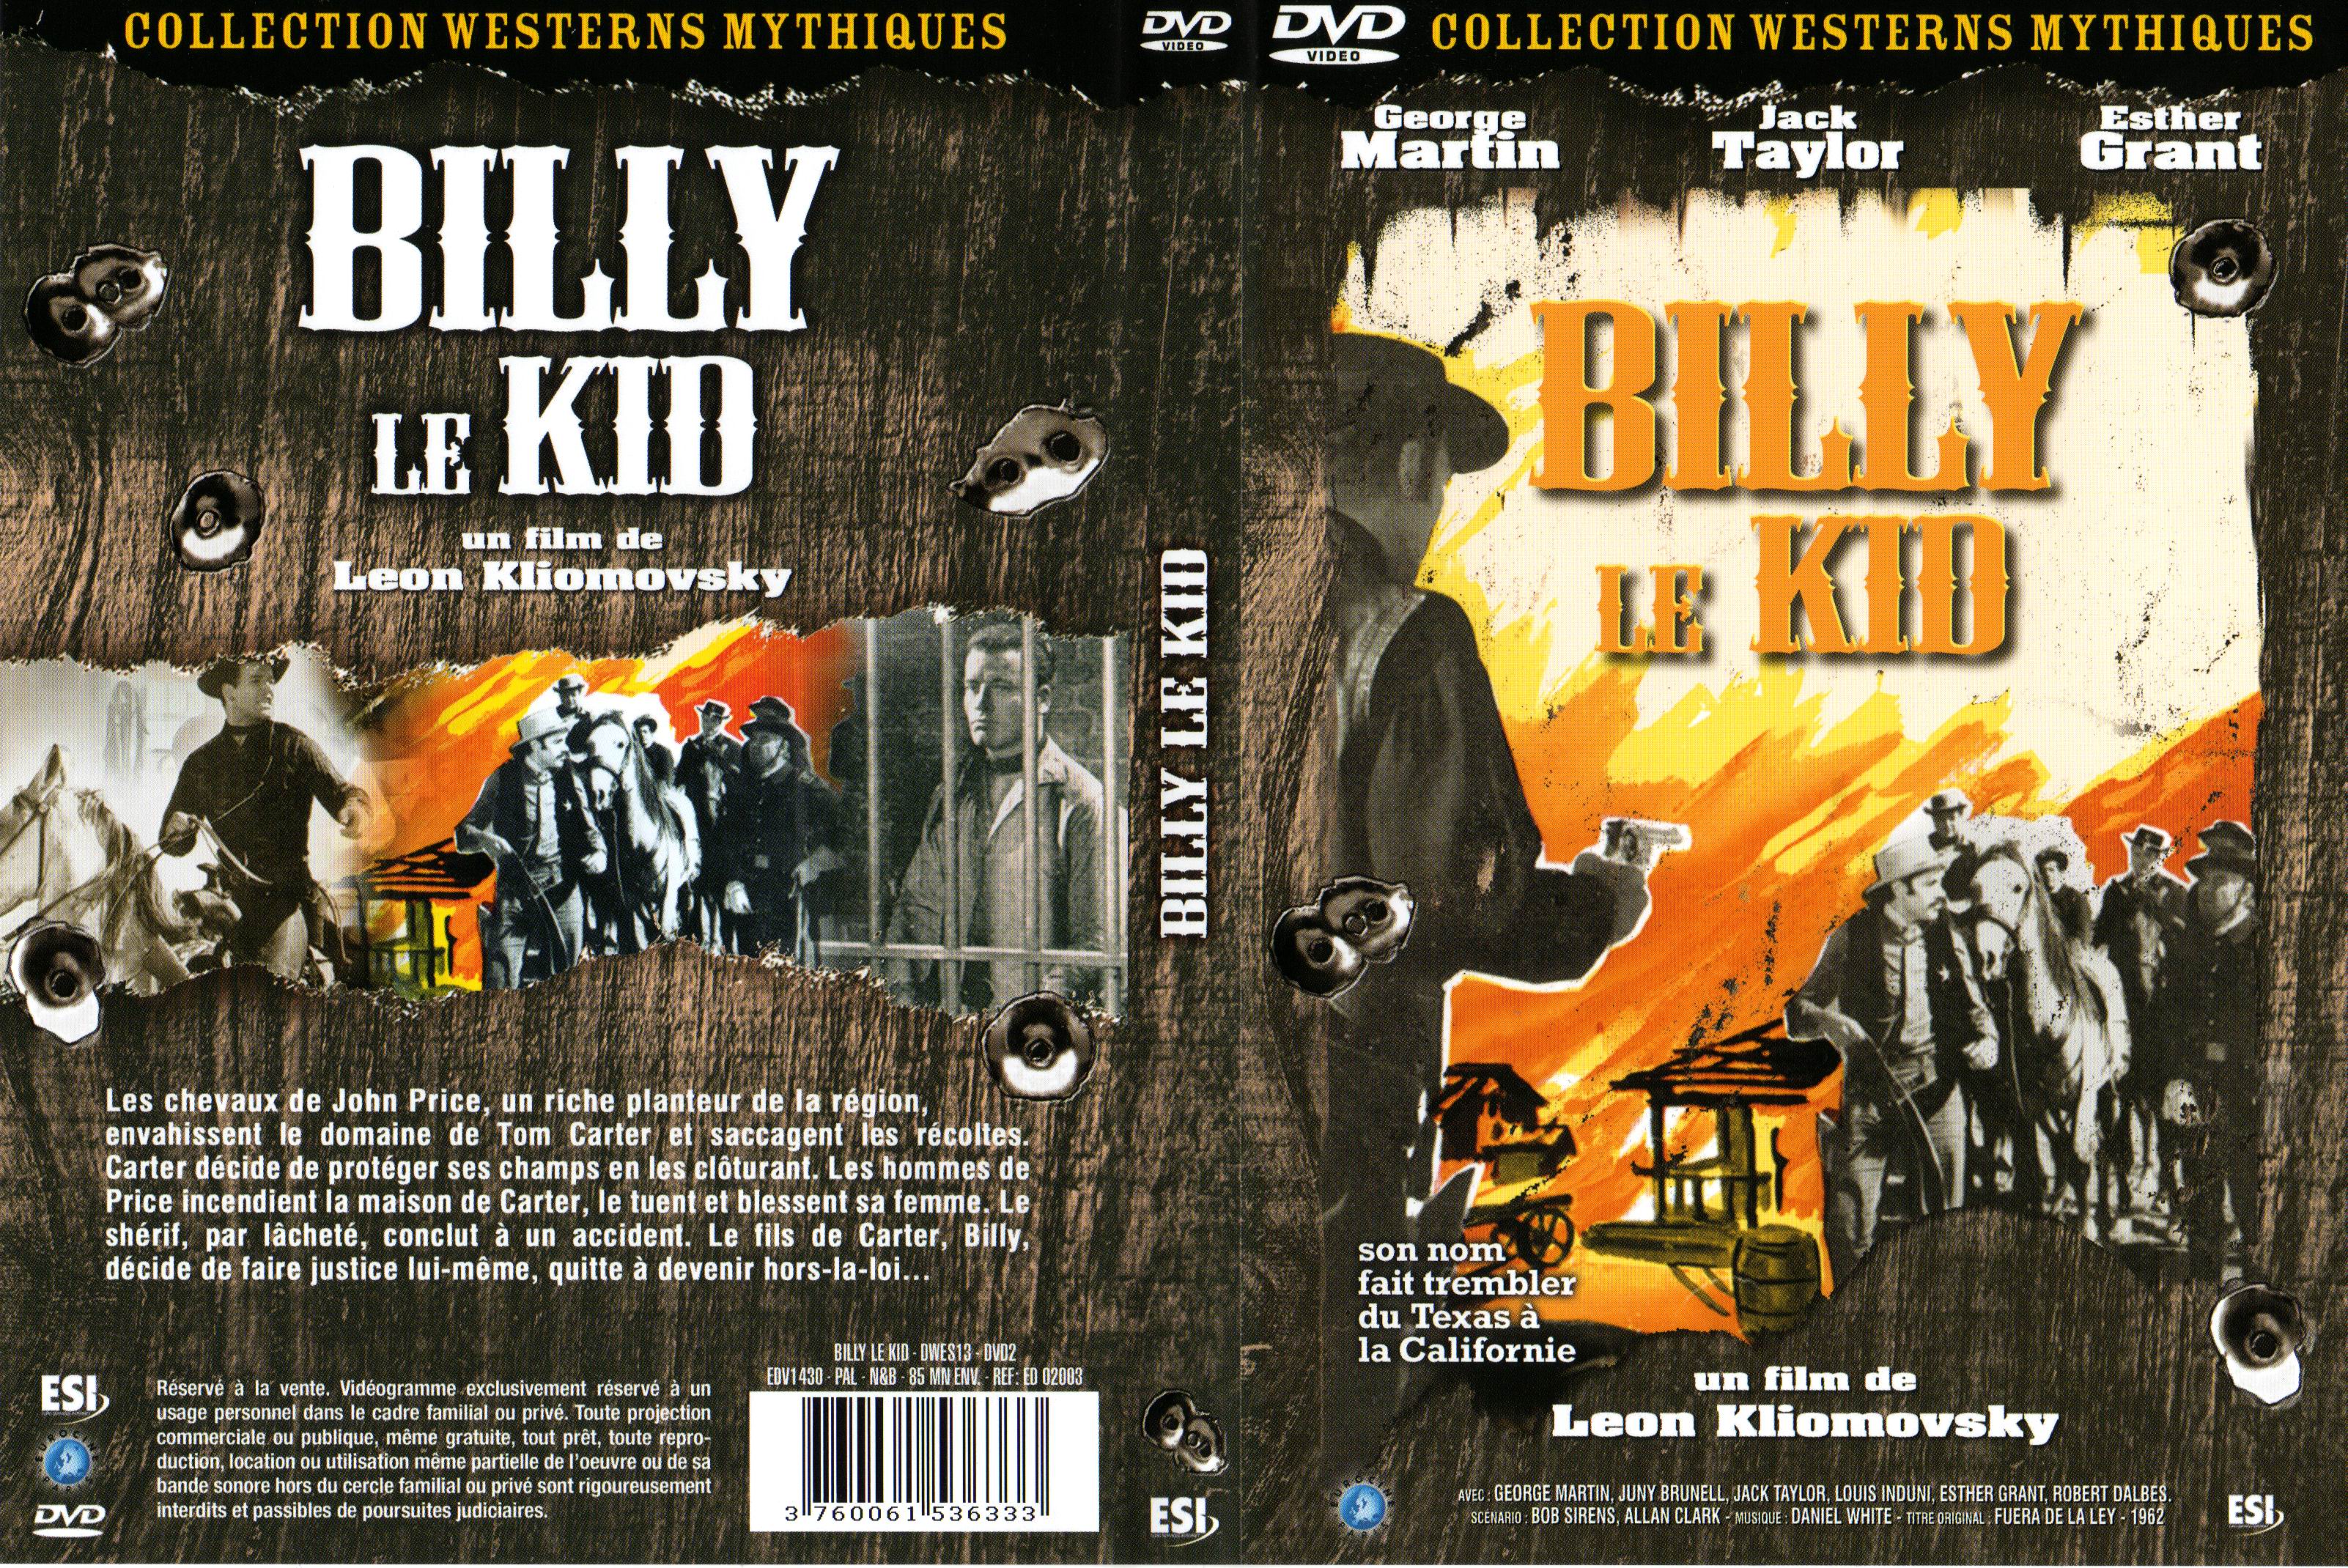 Jaquette DVD Billy le kid v2